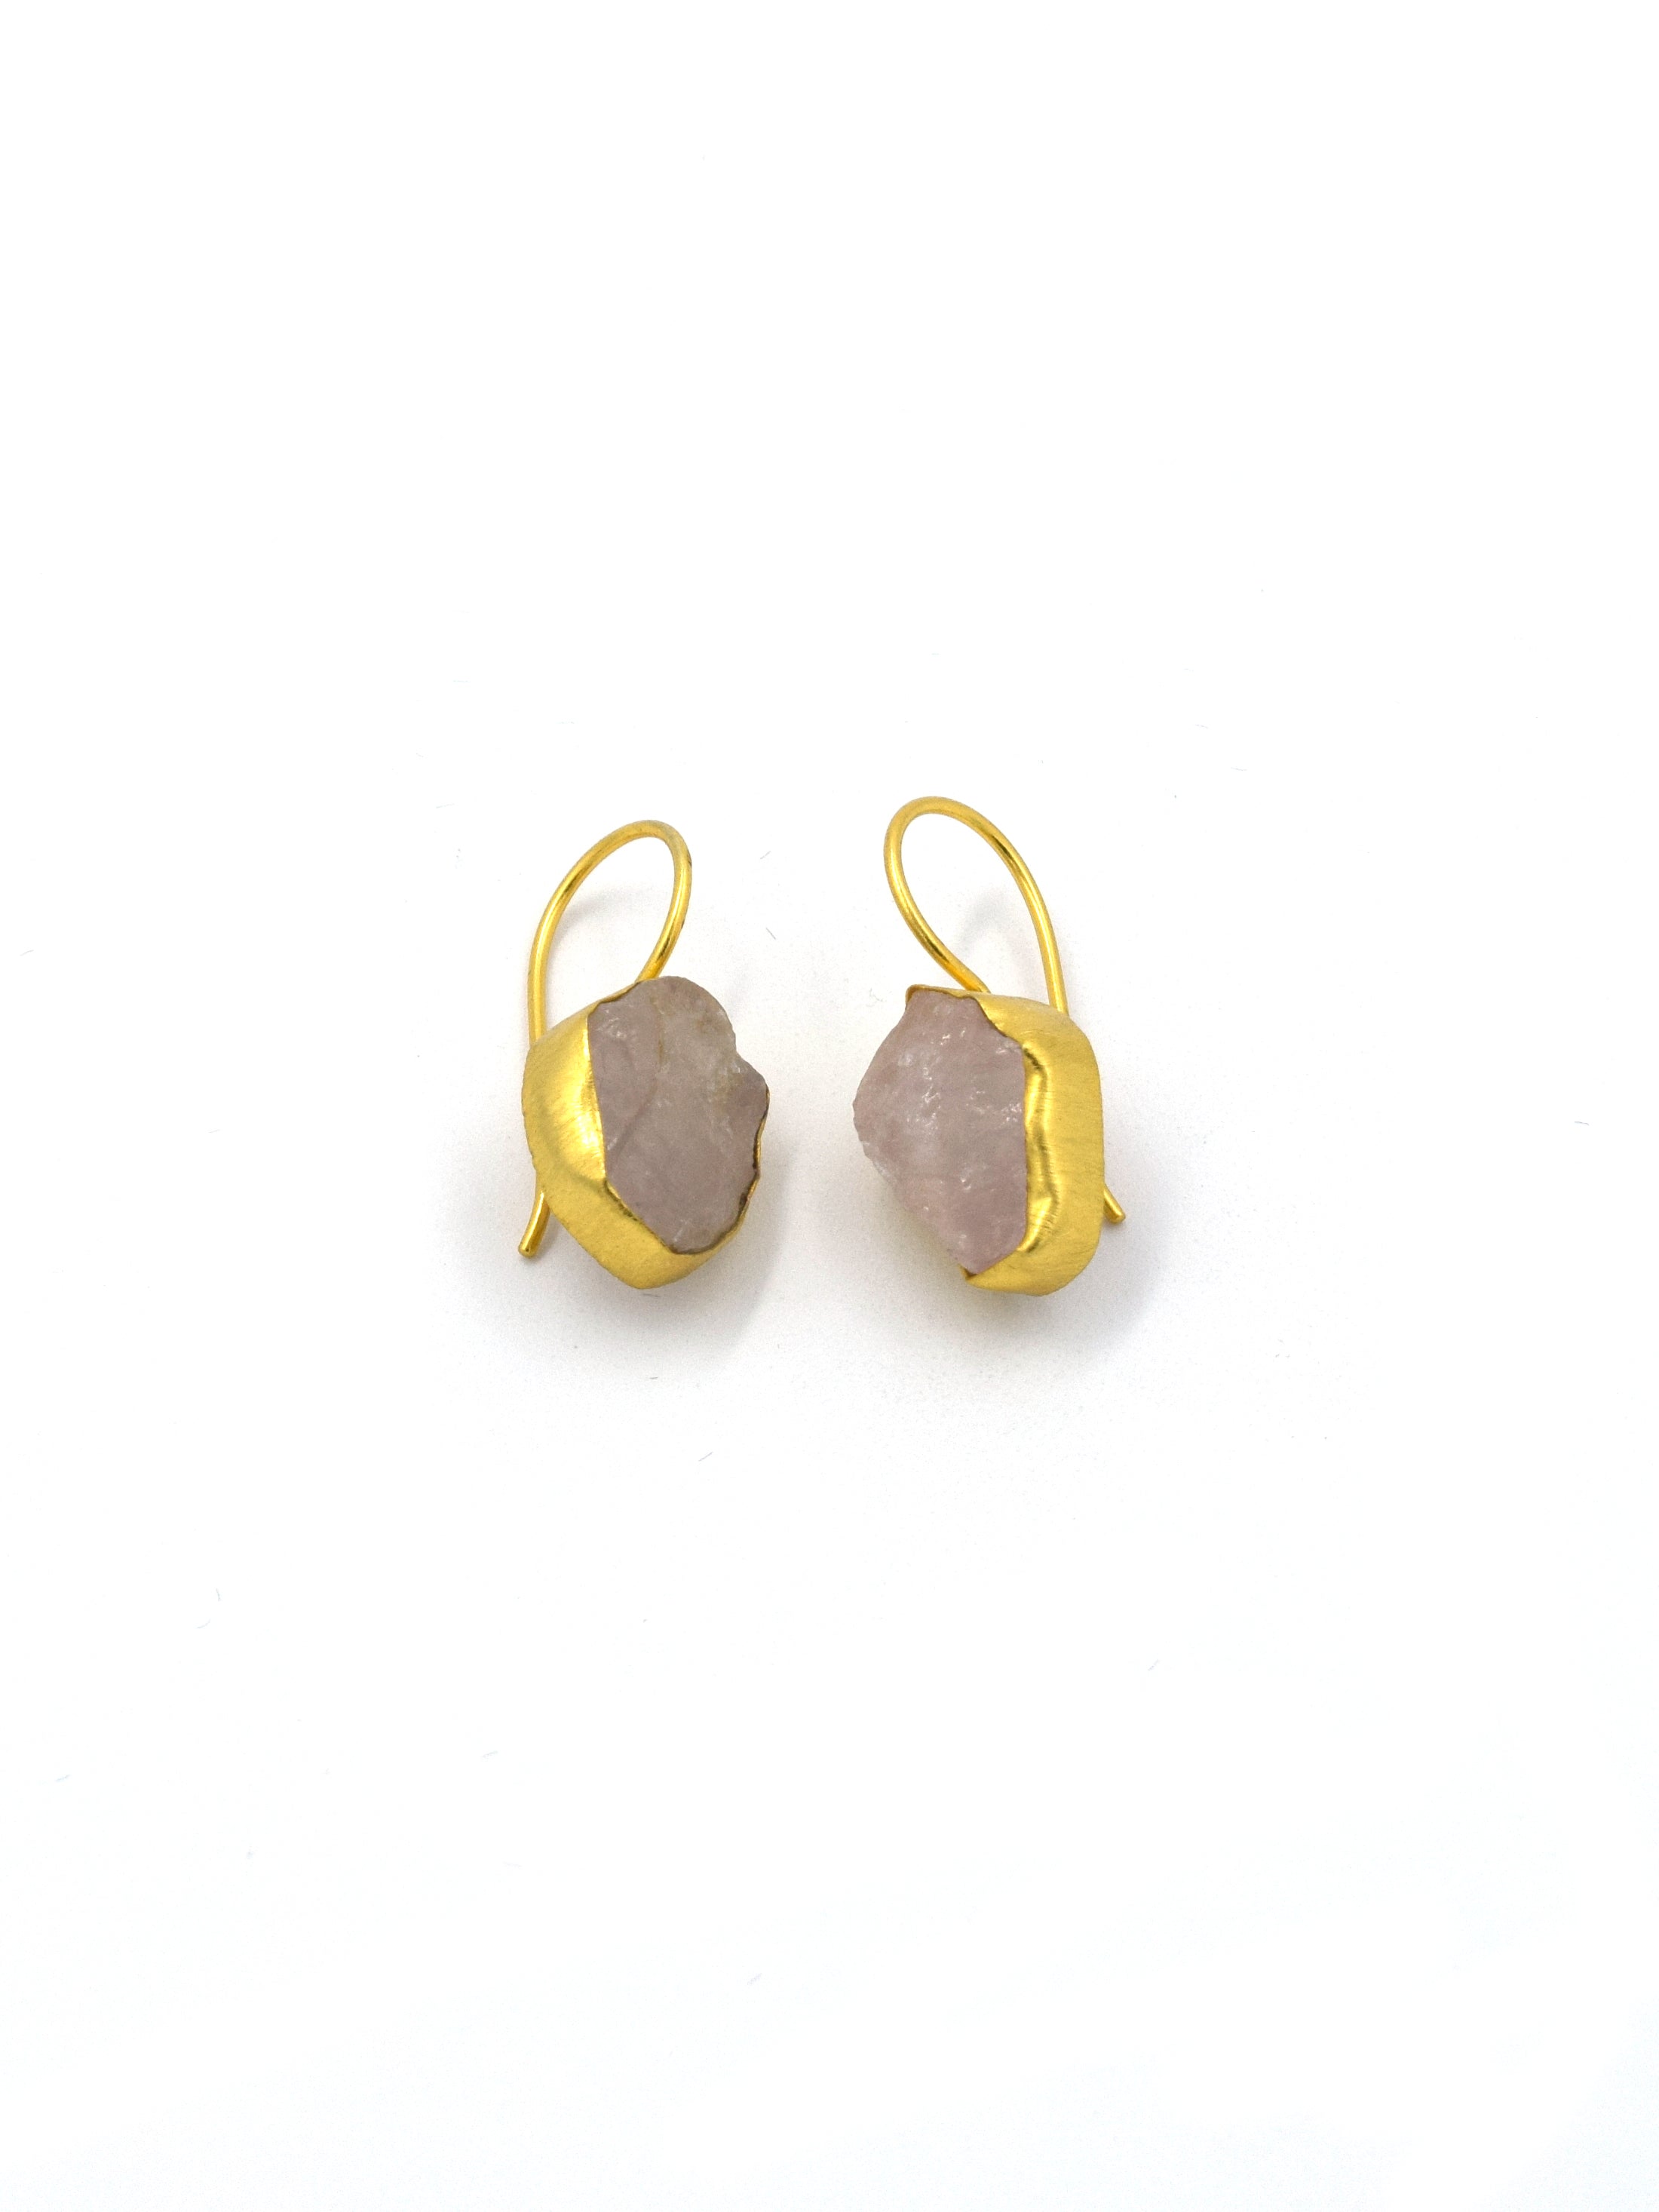 Small single semi precious stone drop earrings